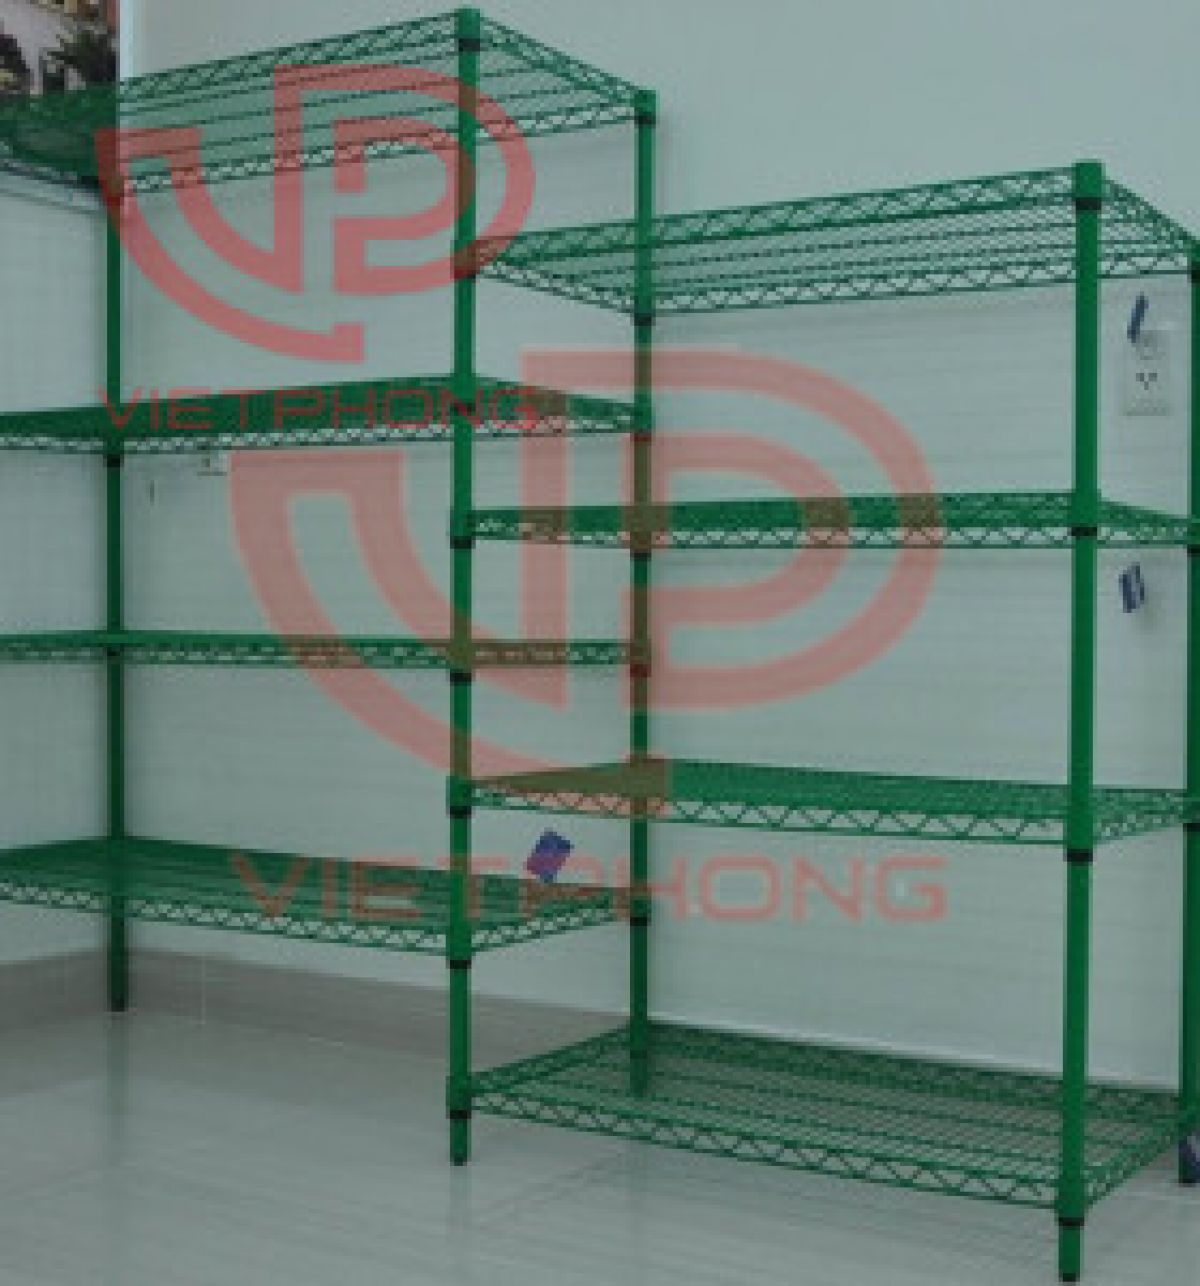 Continuous shelves